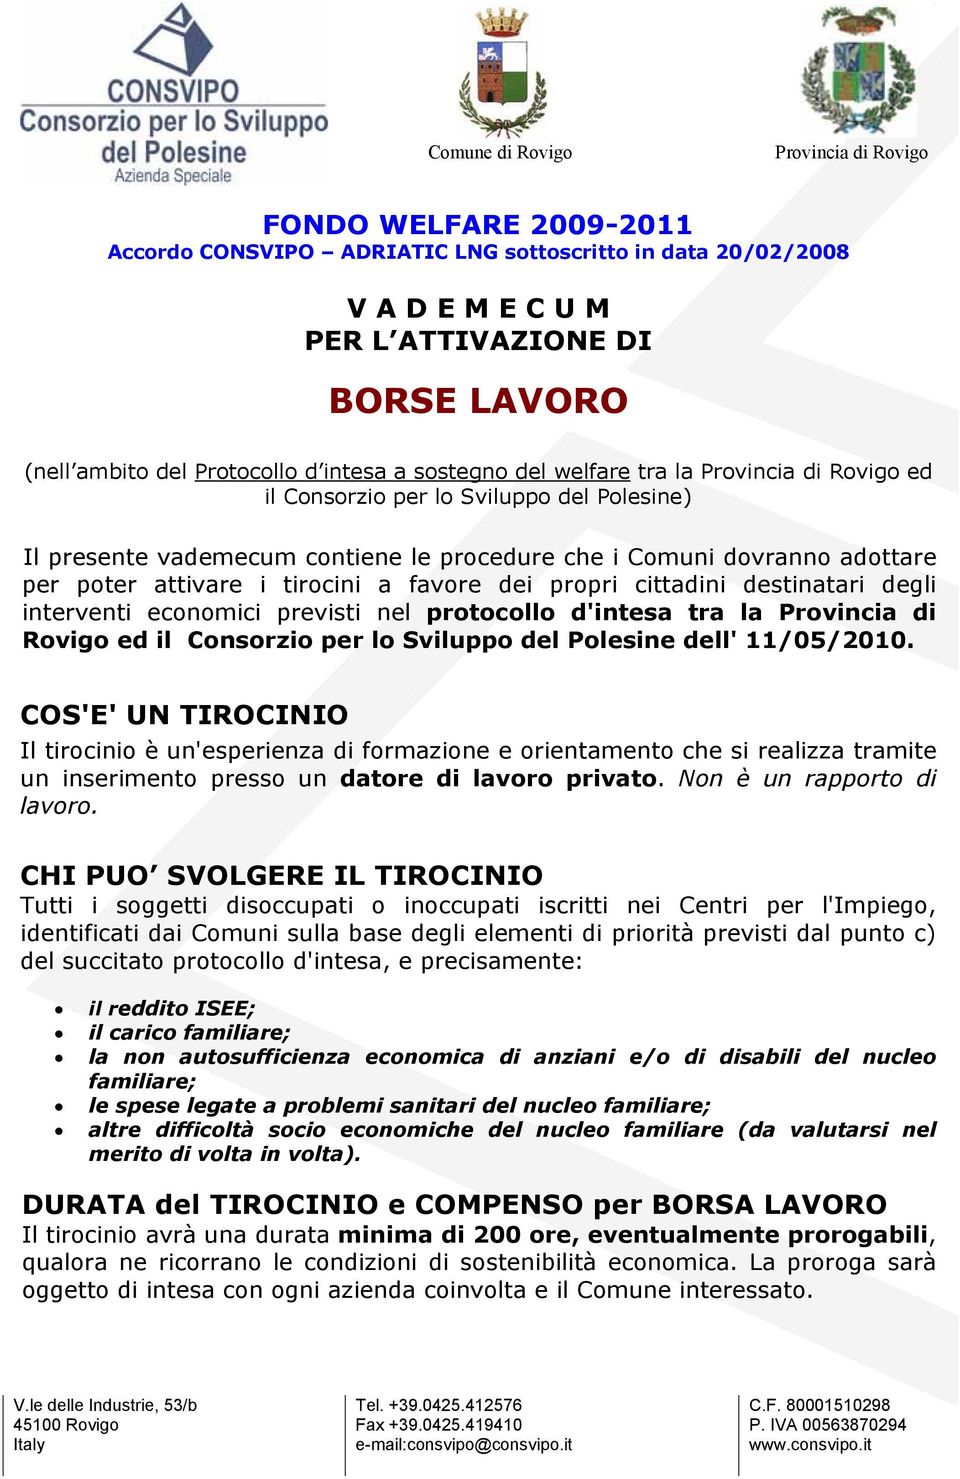 degli interventi economici previsti nel protocollo d'intesa tra la Provincia di Rovigo ed il Consorzio per lo Sviluppo del Polesine dell' 11/05/2010.